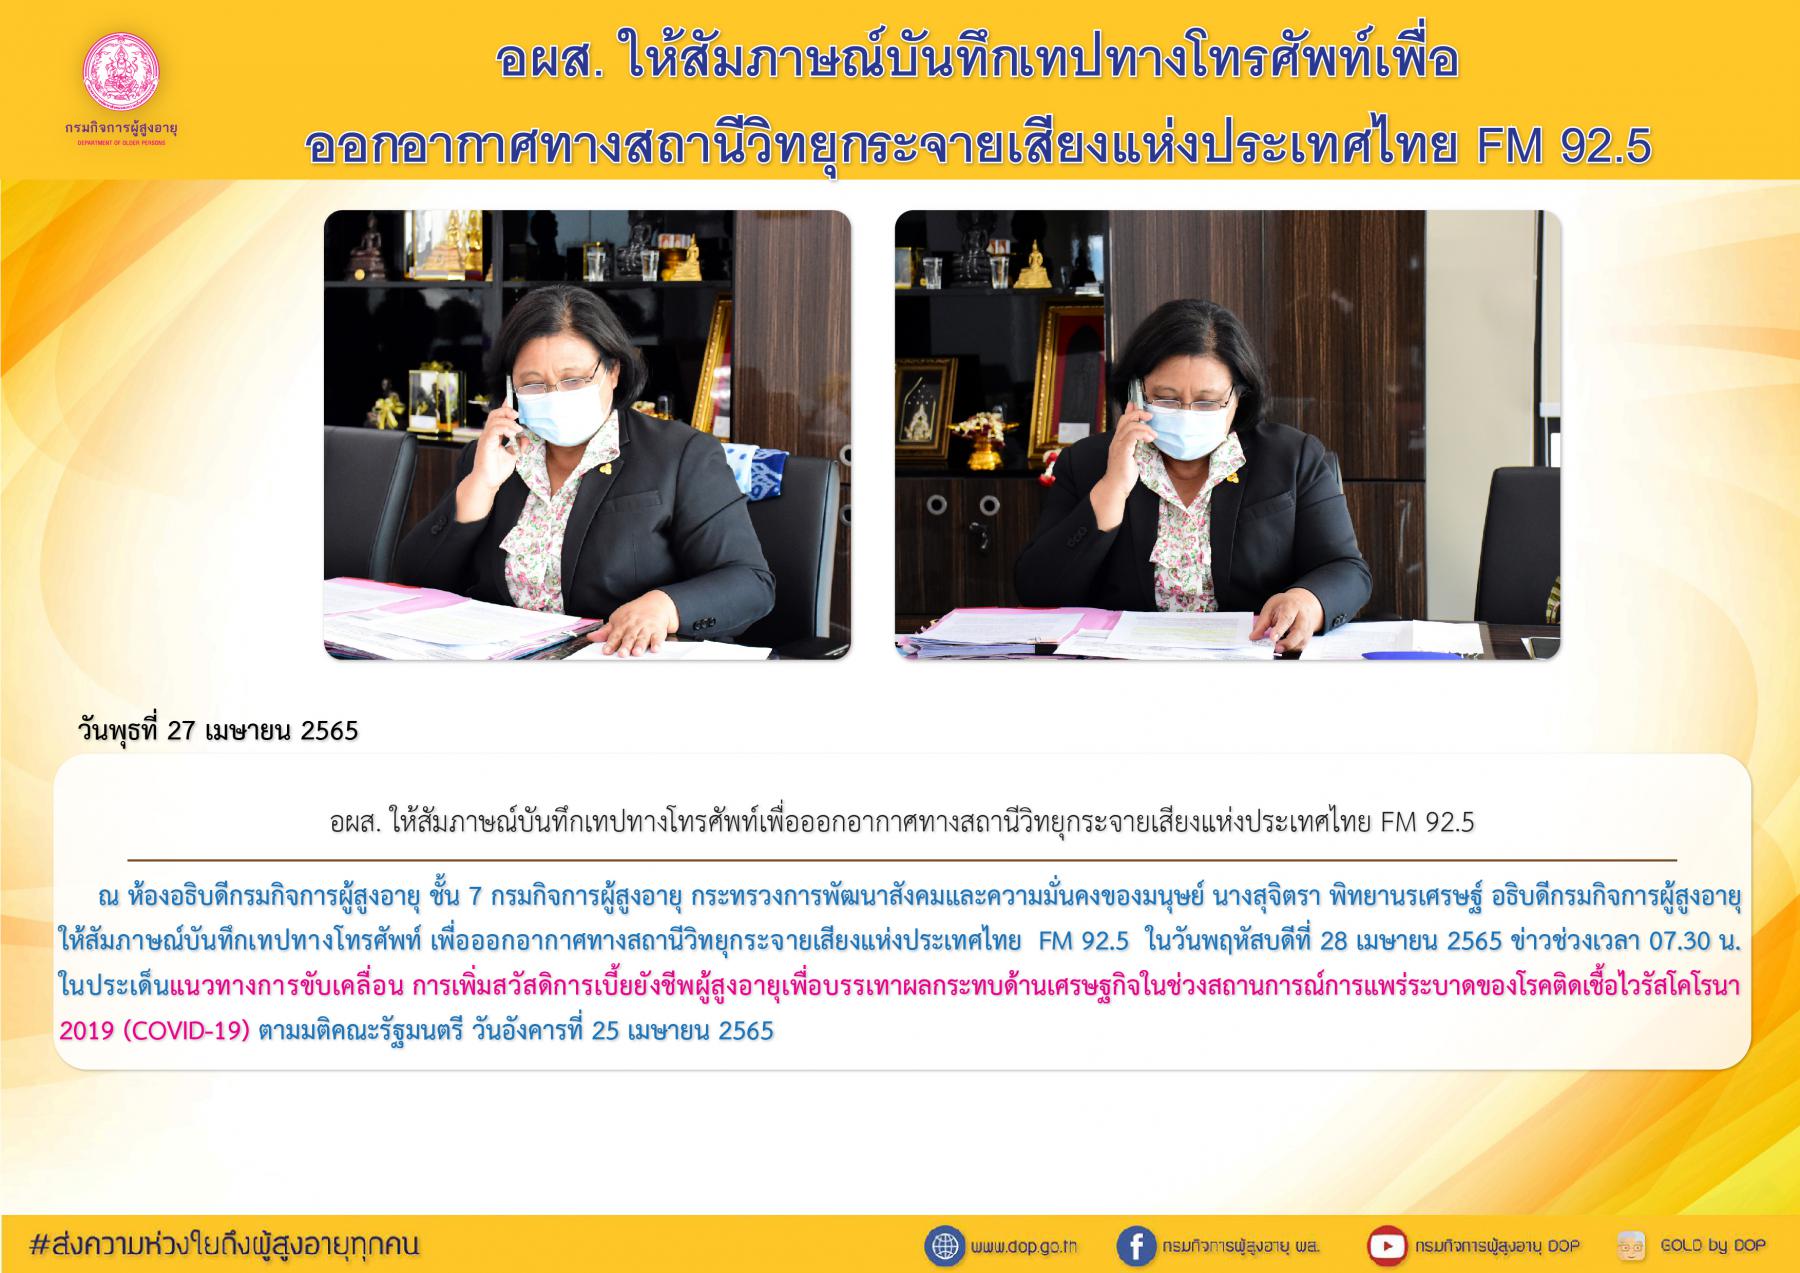 อผส. ให้สัมภาษณ์บันทึกเทปทางโทรศัพท์เพื่อออกอากาศทางสถานีวิทยุกระจายเสียงแห่งประเทศไทย FM 92.5